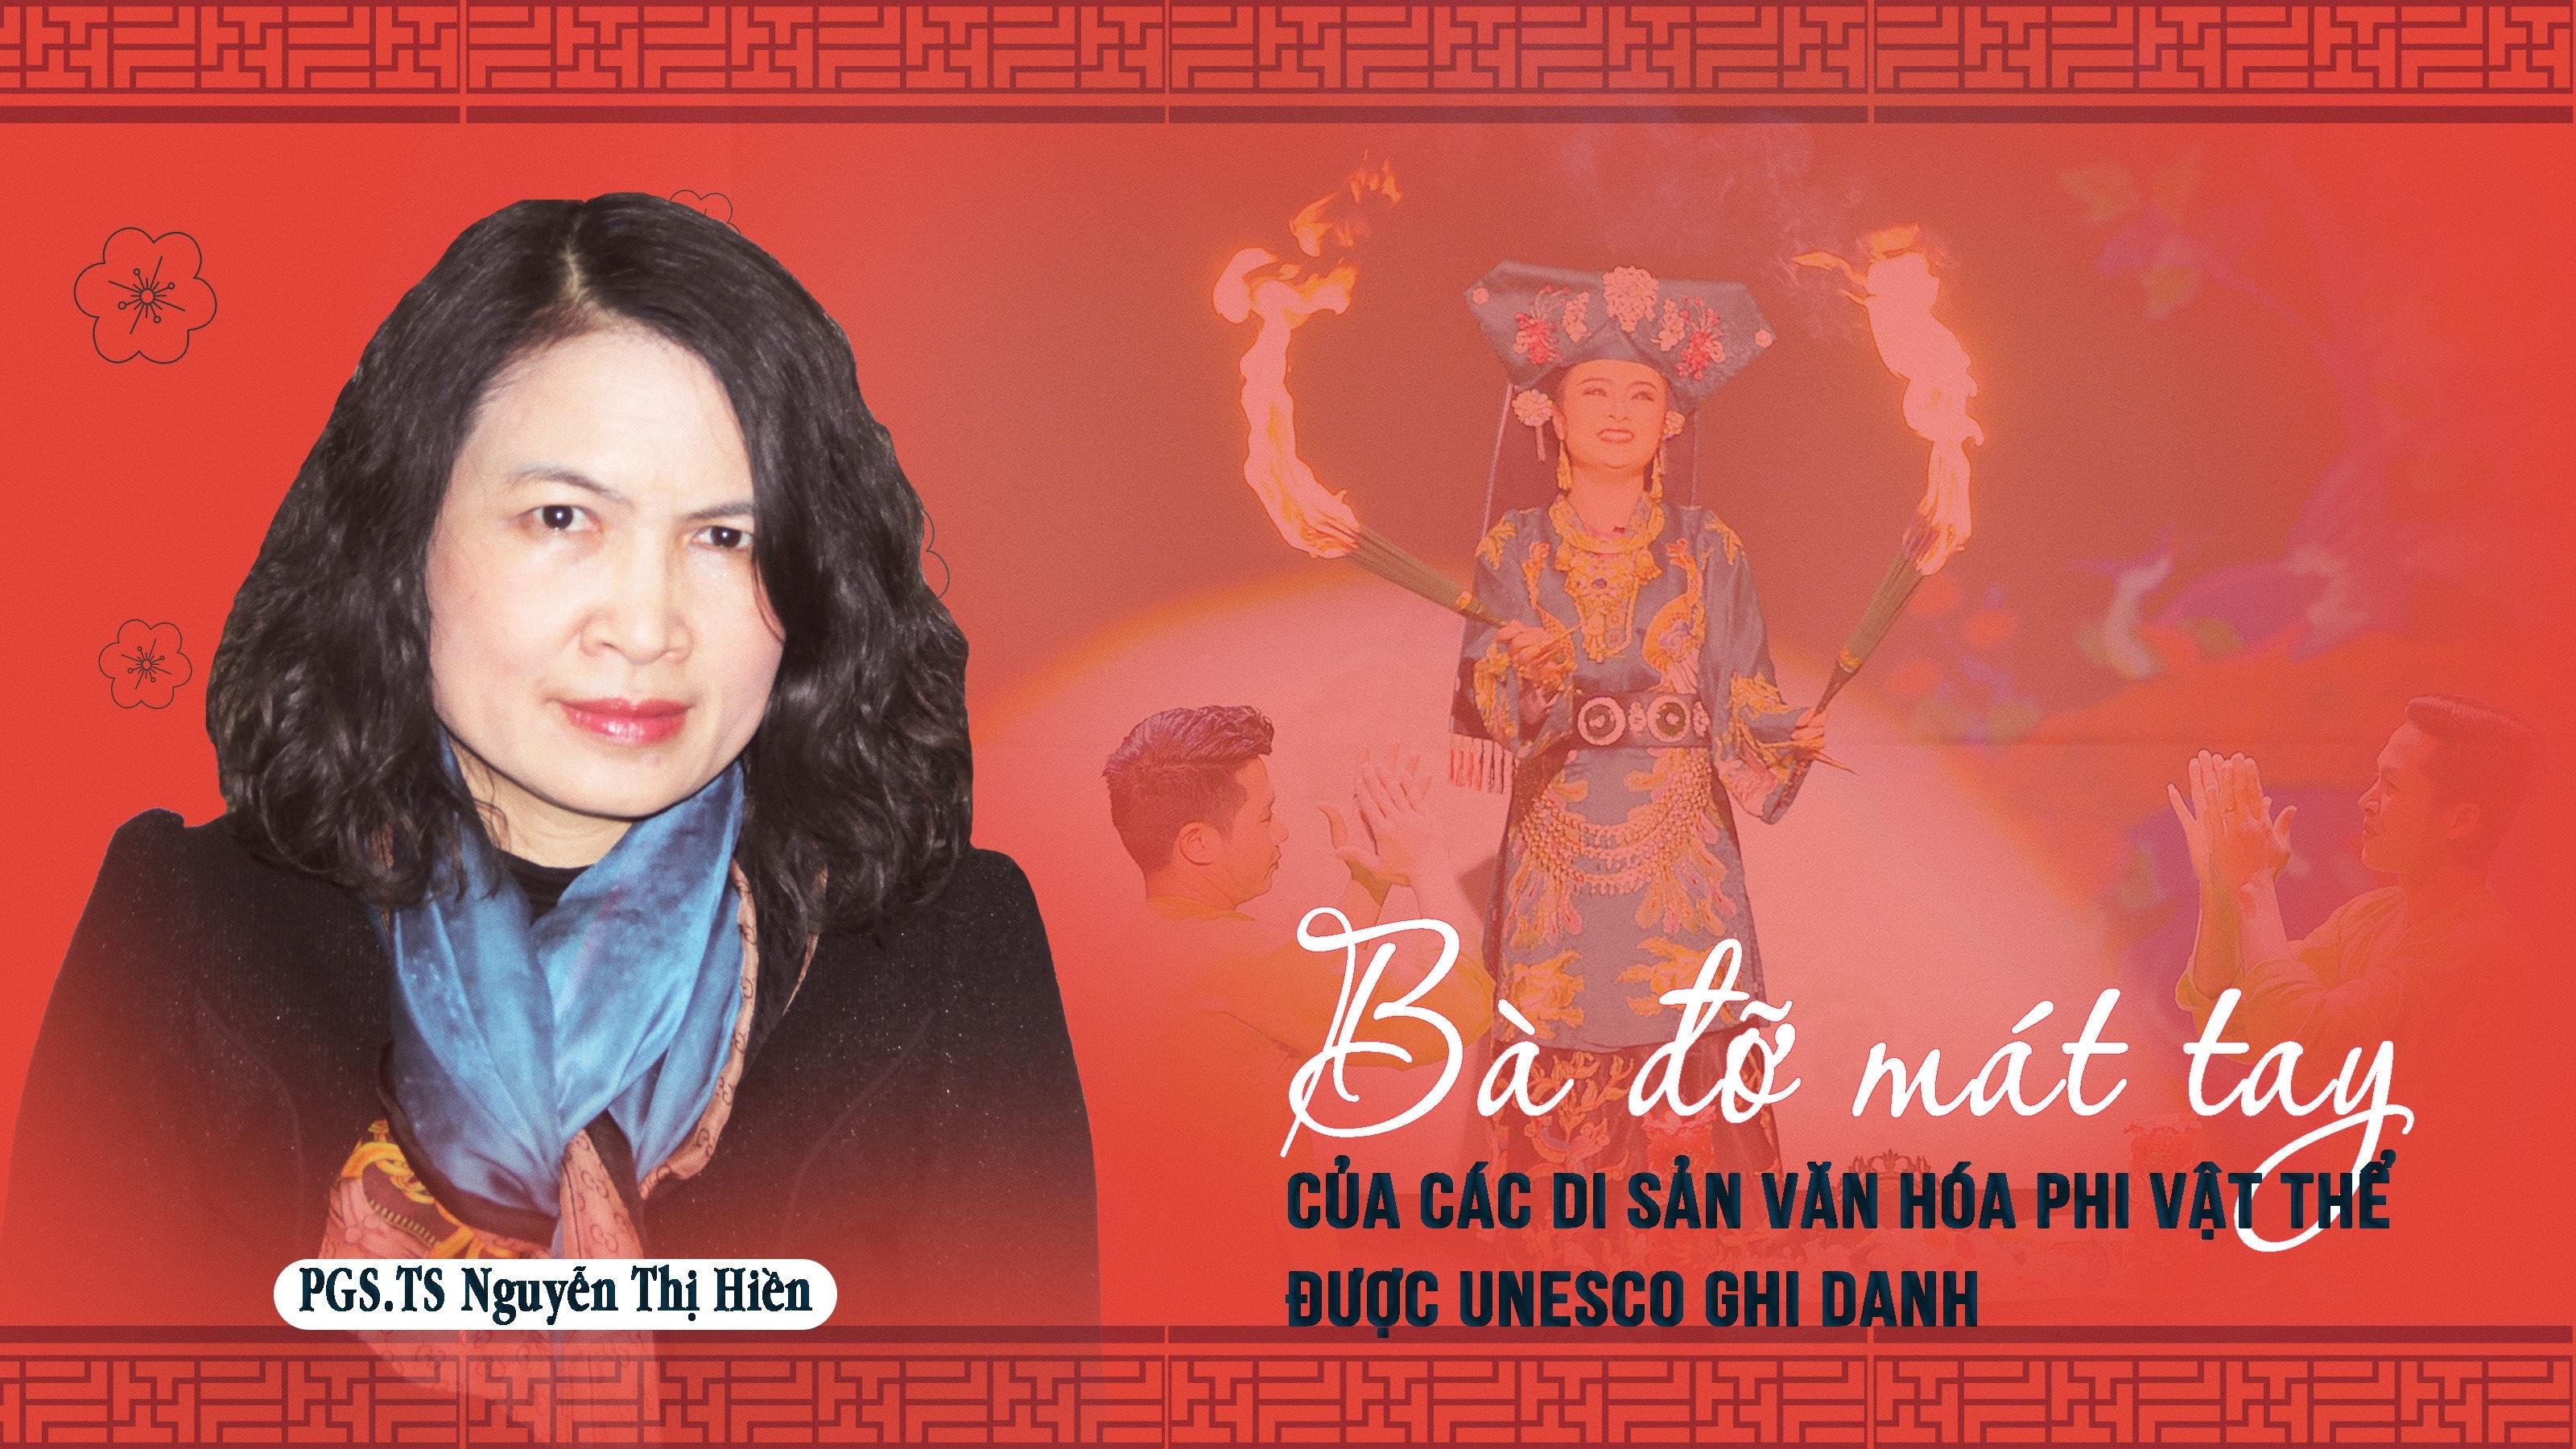 PGS.TS Nguyễn Thị Hiền: Bà đỡ mát tay của các di sản văn hóa phi vật thể được UNESCO ghi danh